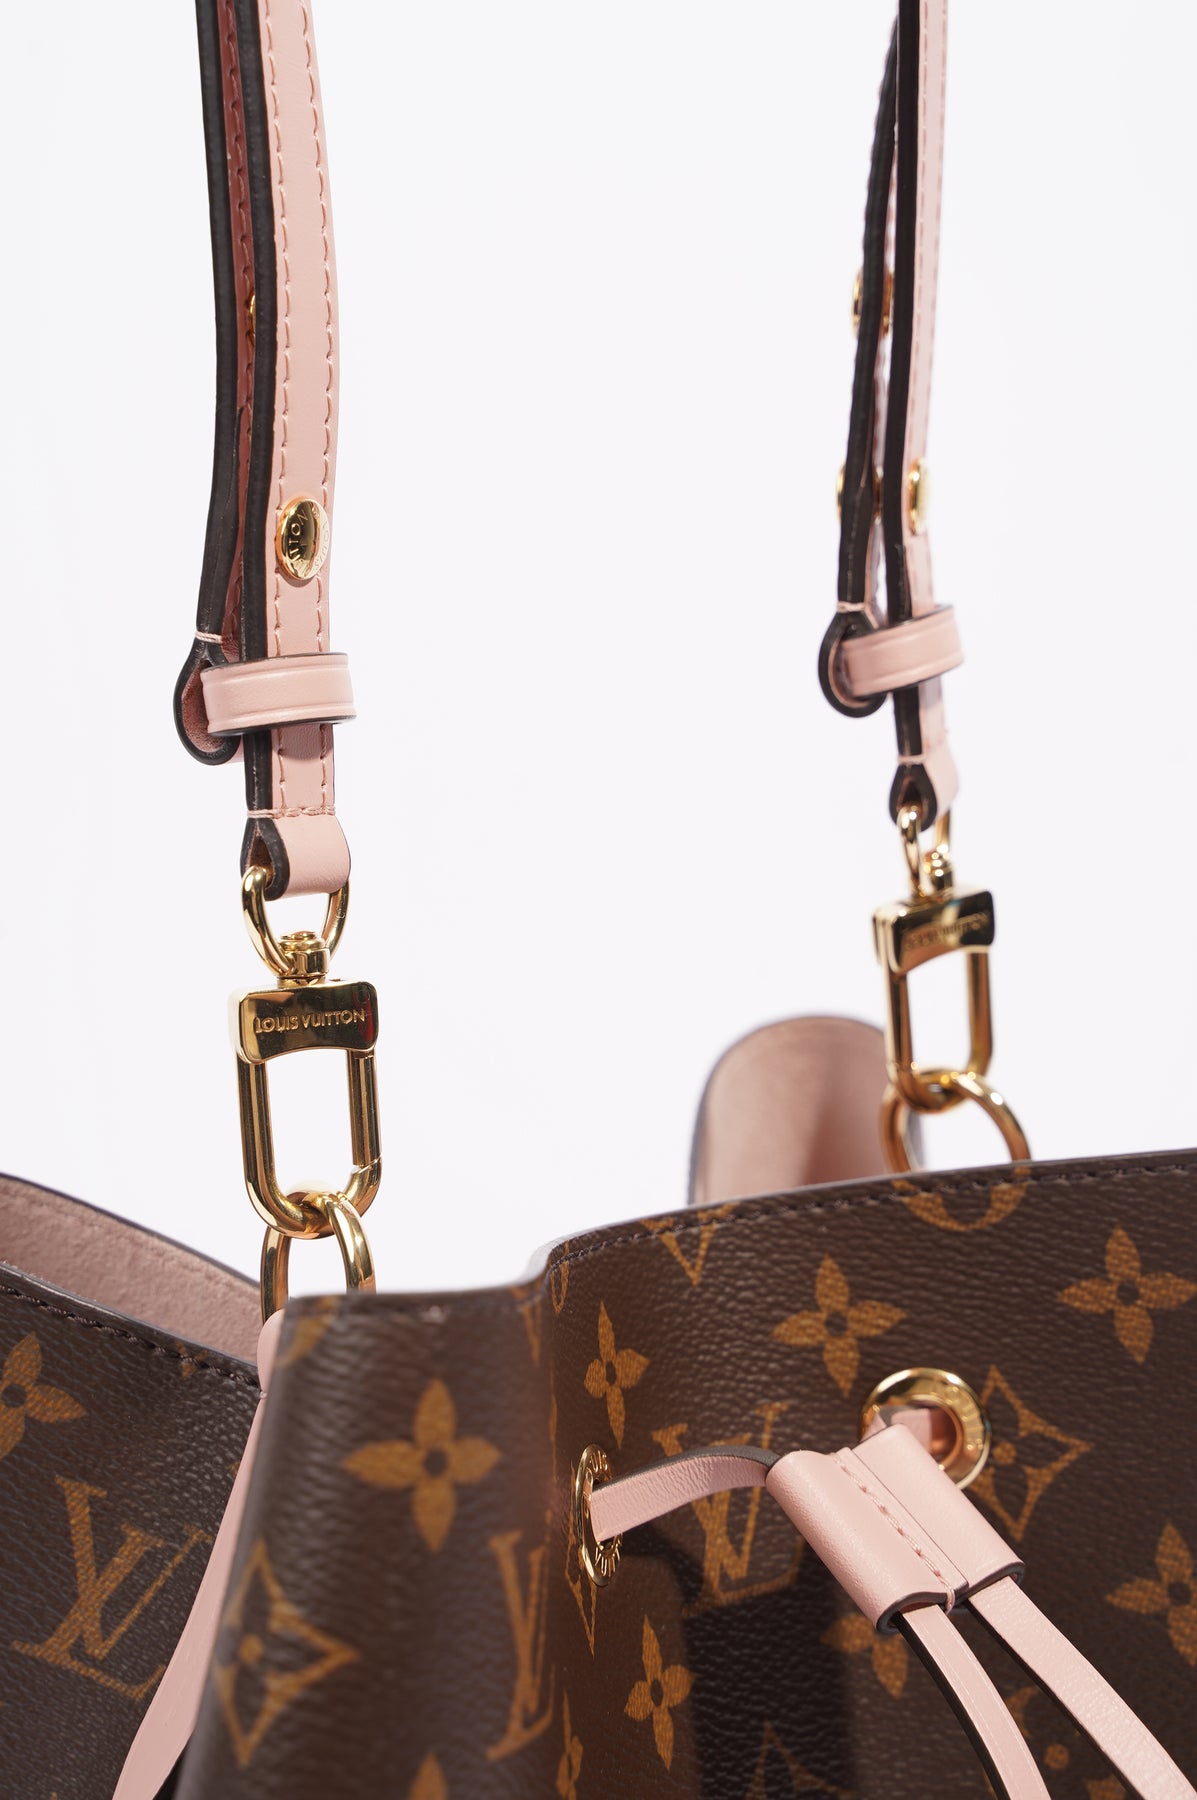 Louis Vuitton - Néonoé - Monogram - Rose Poudre - Women - Handbag - Luxury